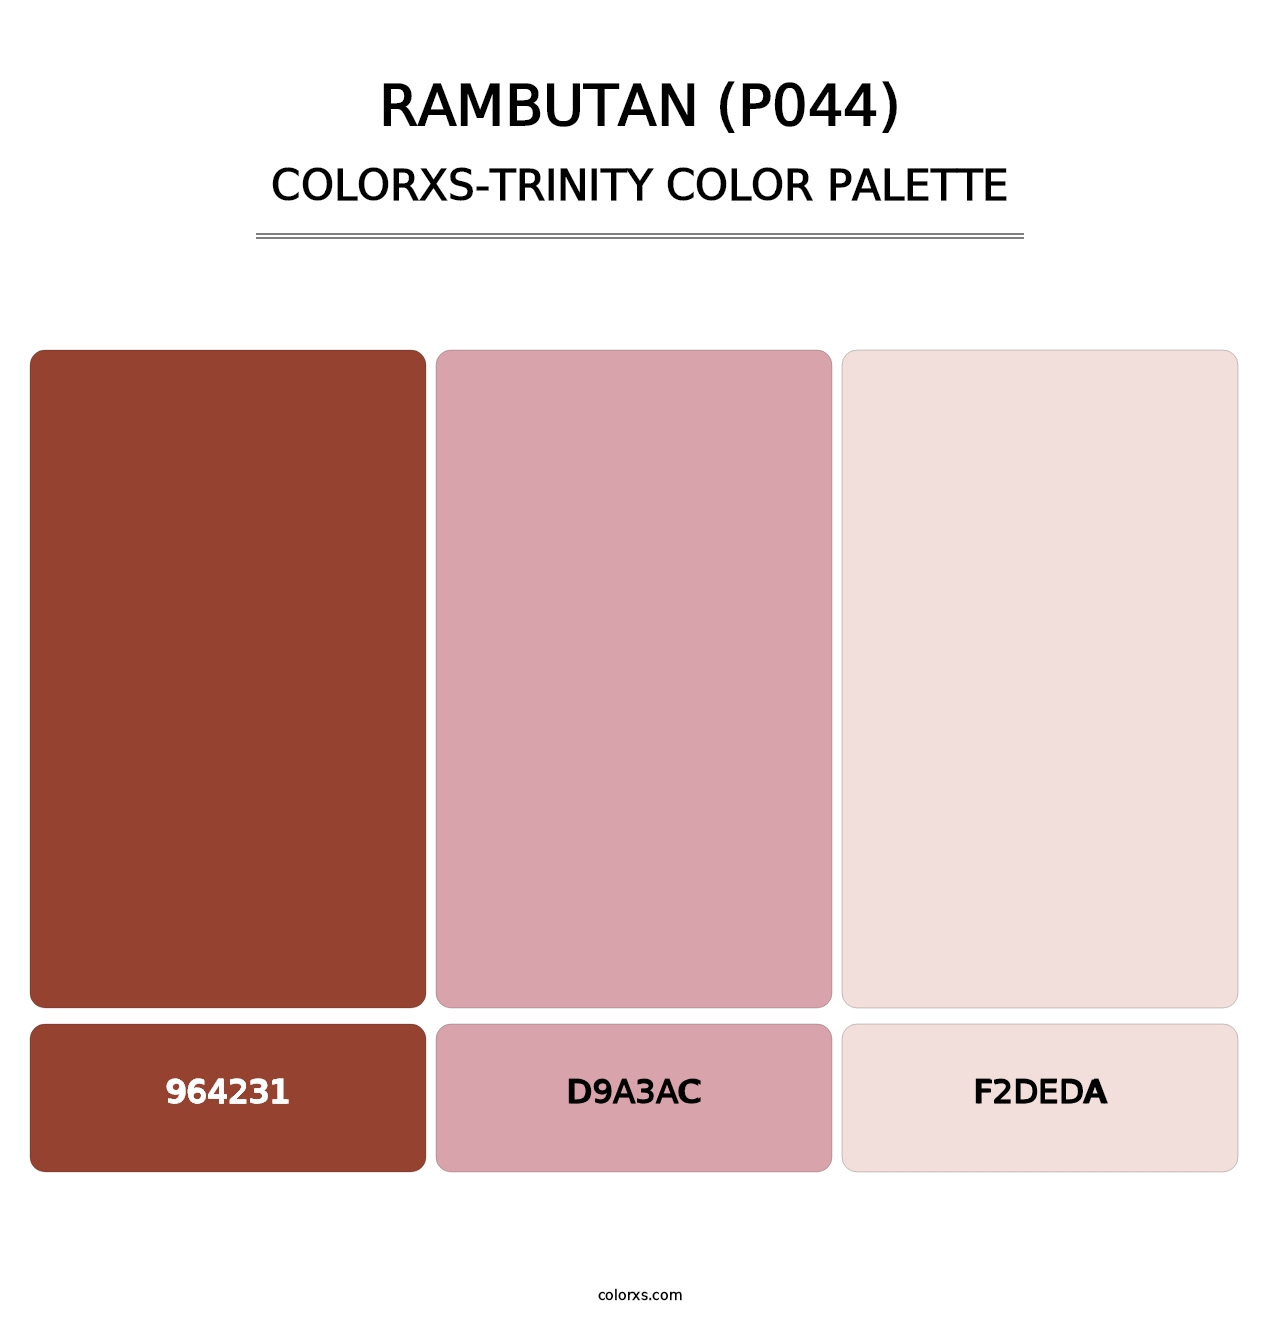 Rambutan (P044) - Colorxs Trinity Palette